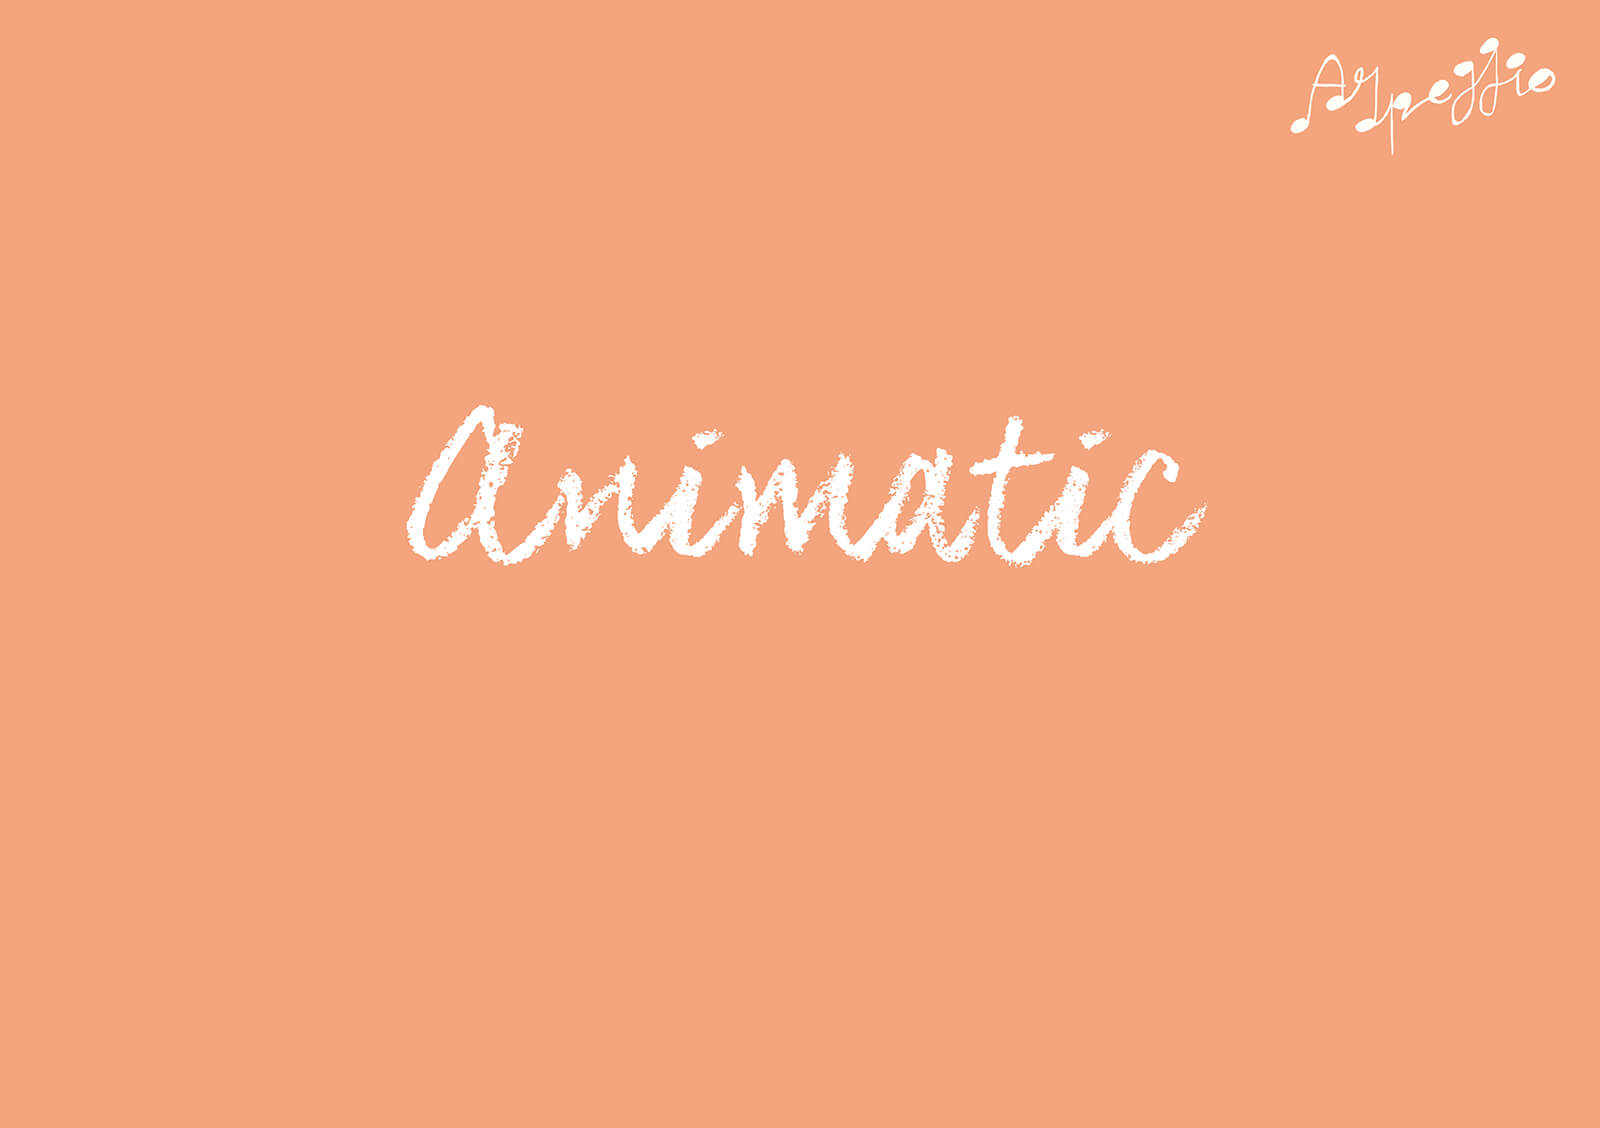 Diapositiva de la presentación de la película Arpeggio con la palabra "Animatic" en blanco sobre fondo naranja pálido.